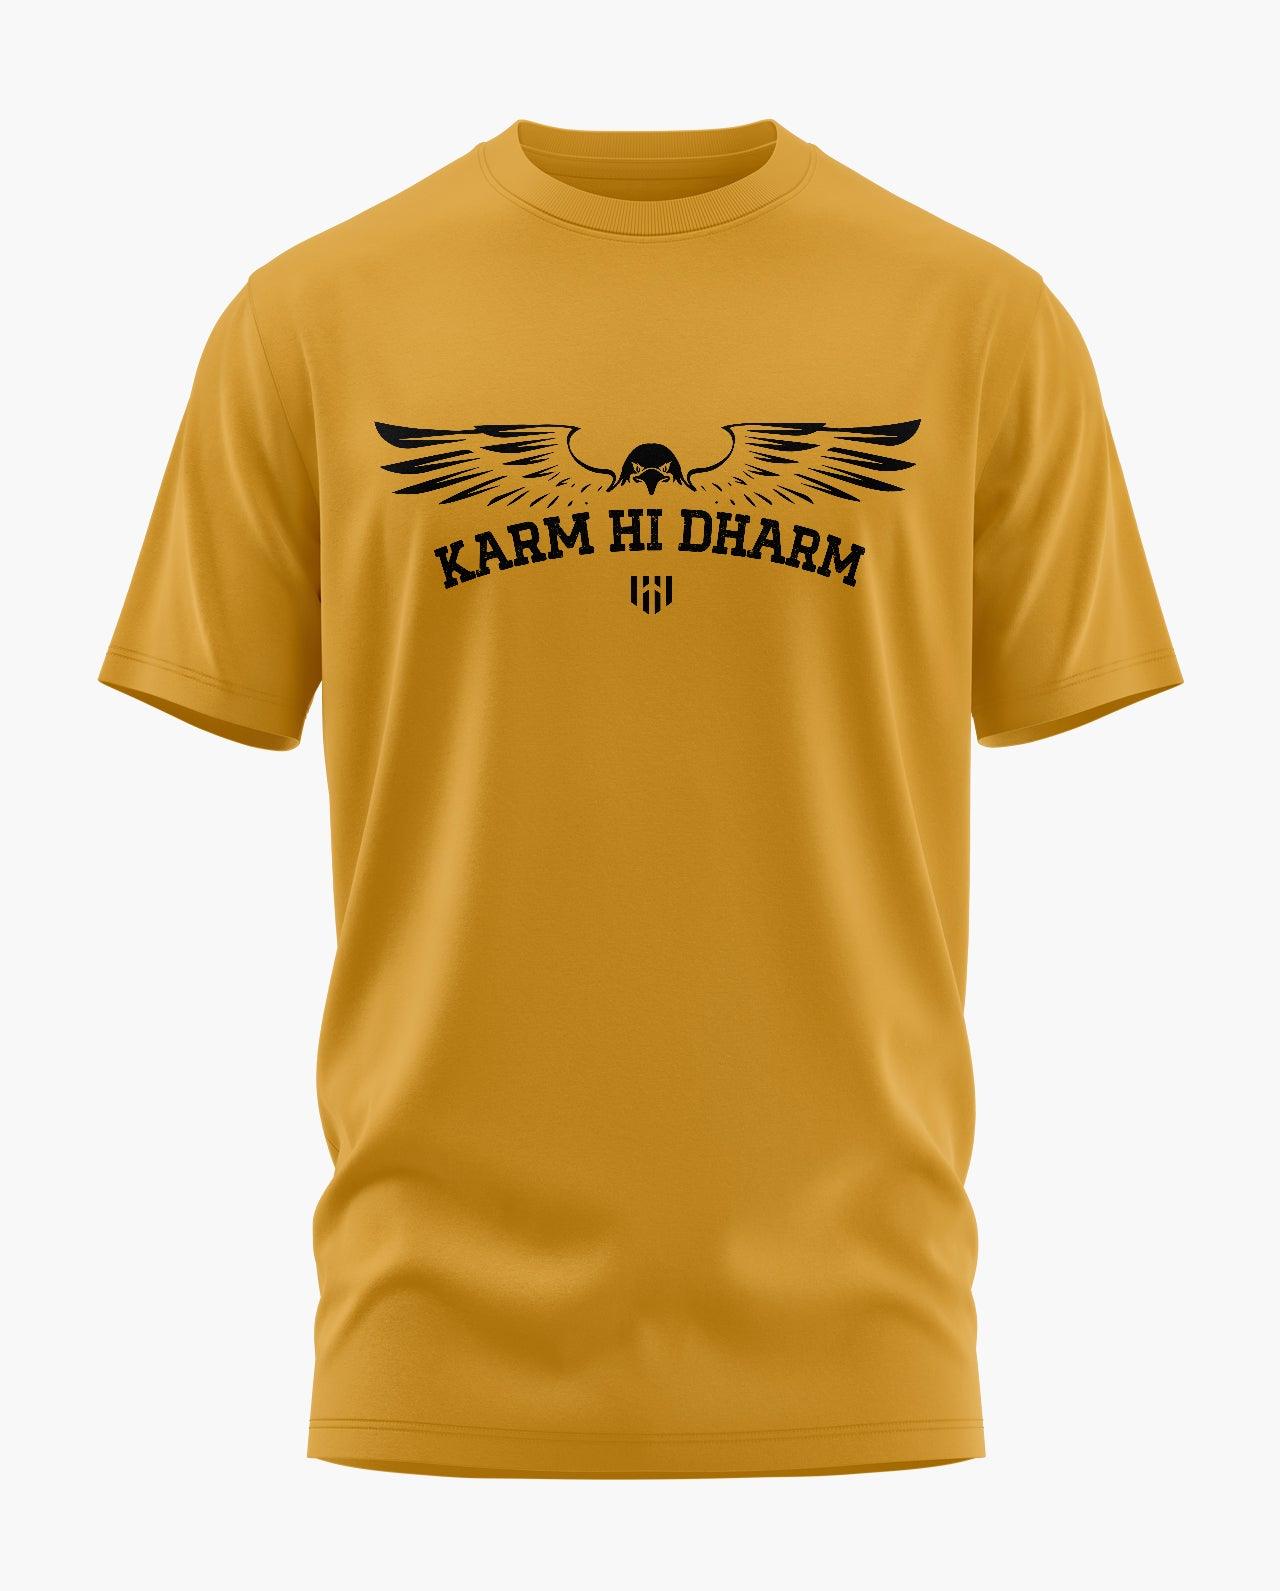 Fashion Fit Hard Rock T-Shirt | 506th Legion